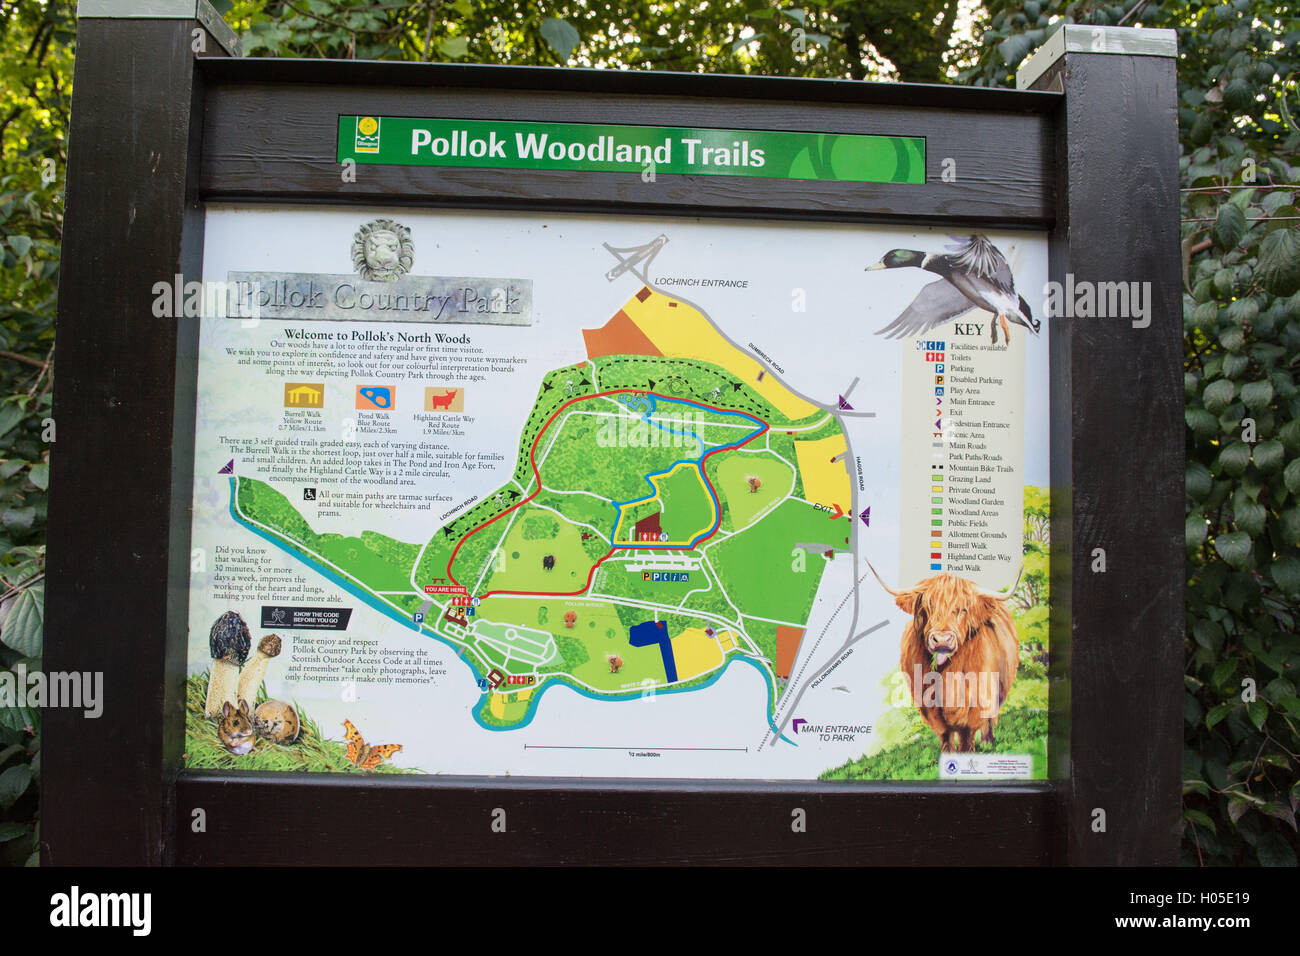 Pollok Country Park information carte des sentiers forestiers Banque D'Images